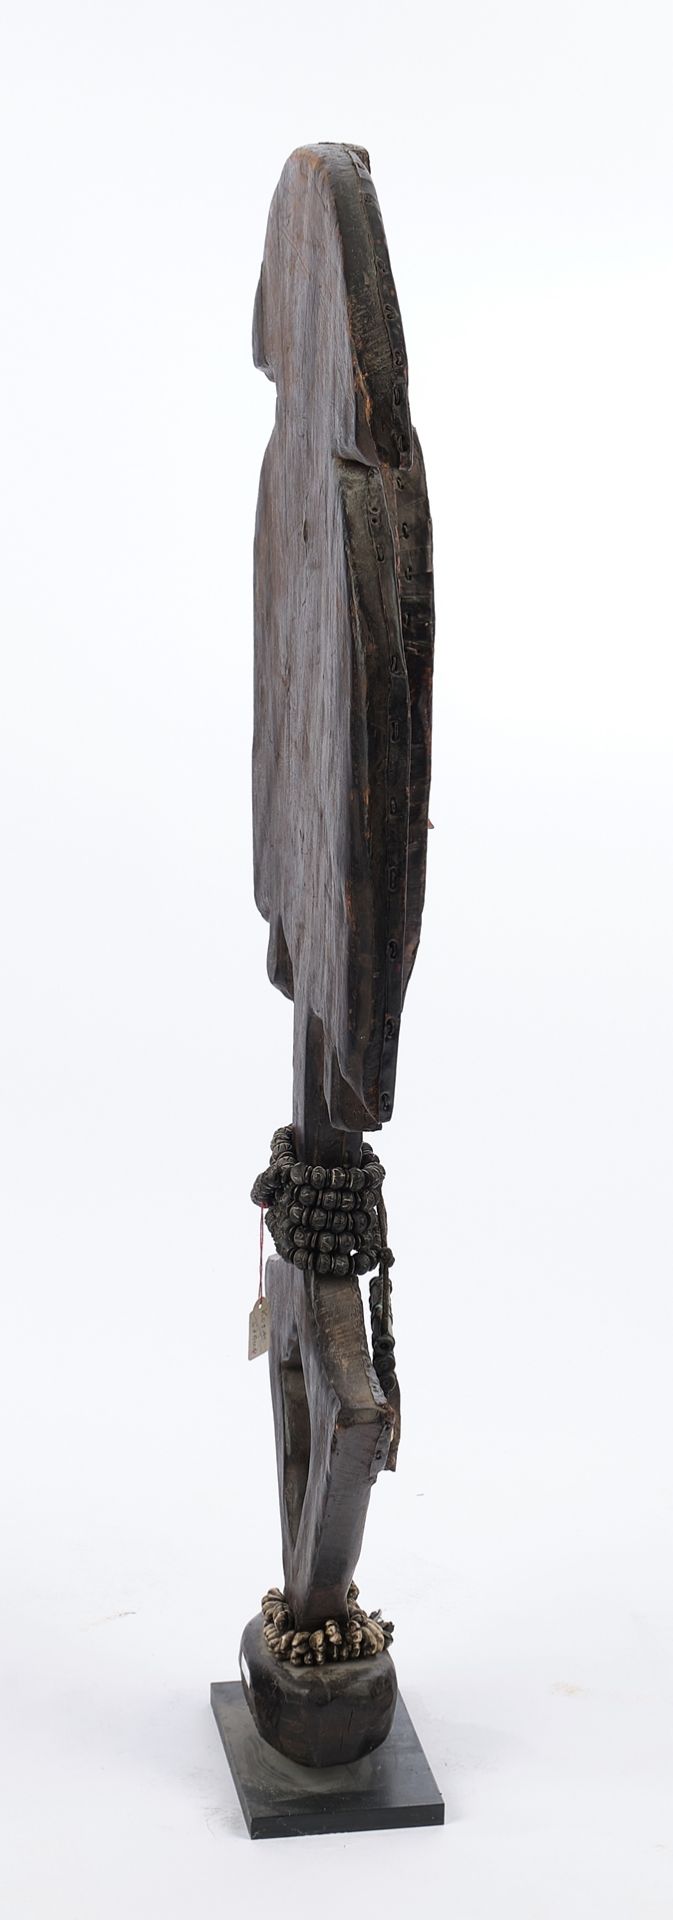 Reliquienfigur, Kota, Mahongwe, Gabun, Afrika, Grabwächter aus Holz, Gesicht und Vorderseite mit Ku - Image 2 of 4